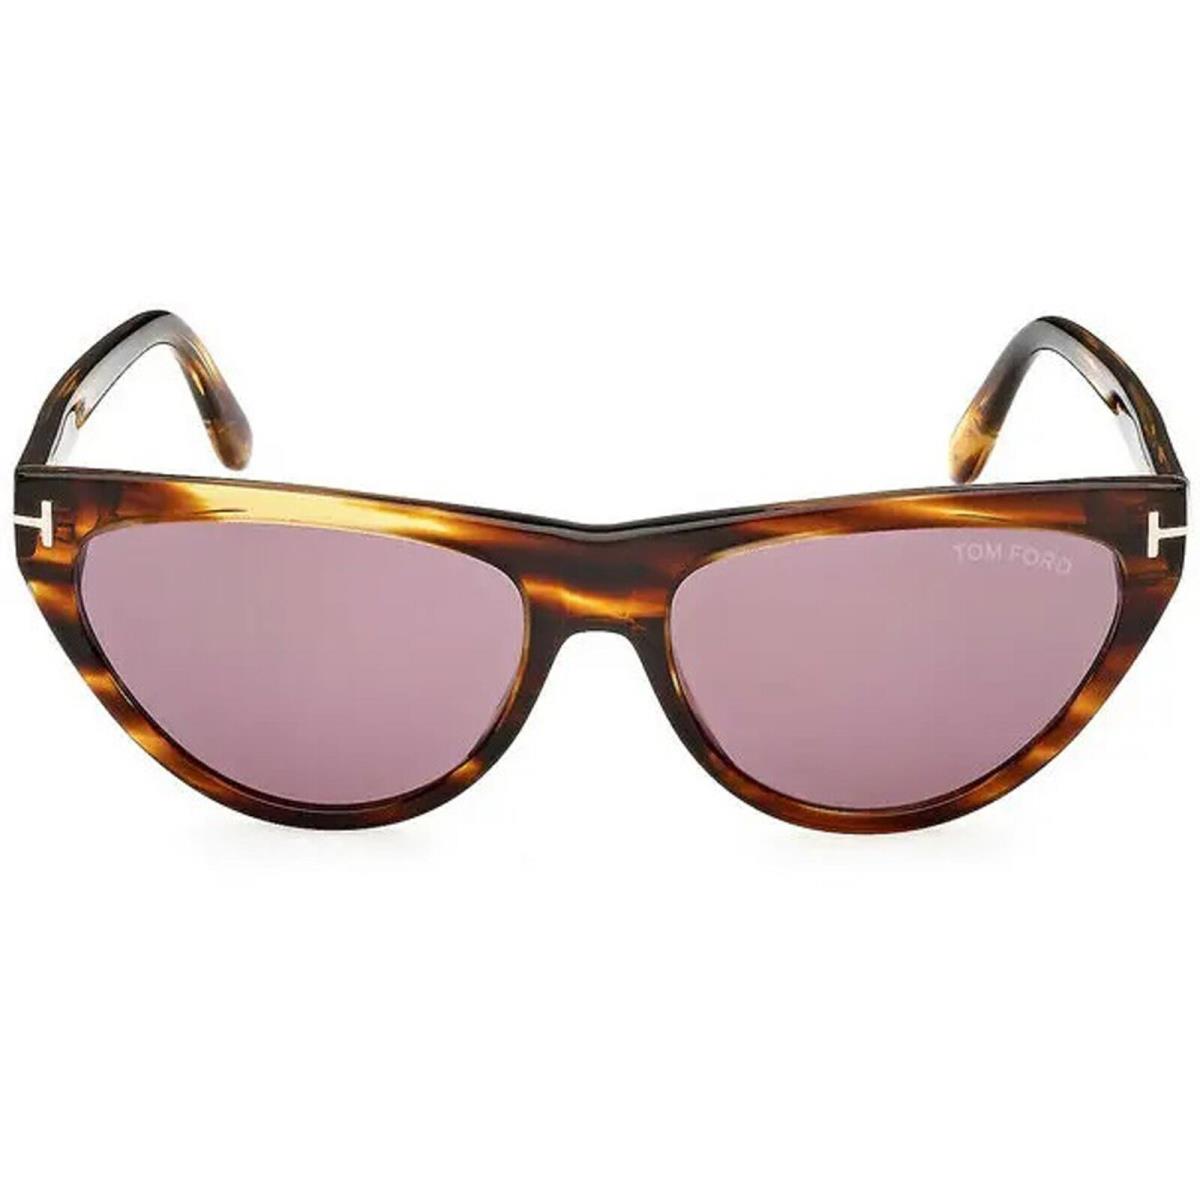 Tom Ford Women`s Sunglasses Amber-02 Violet Lens Havana Cat Eye Frame FT0990 55Y